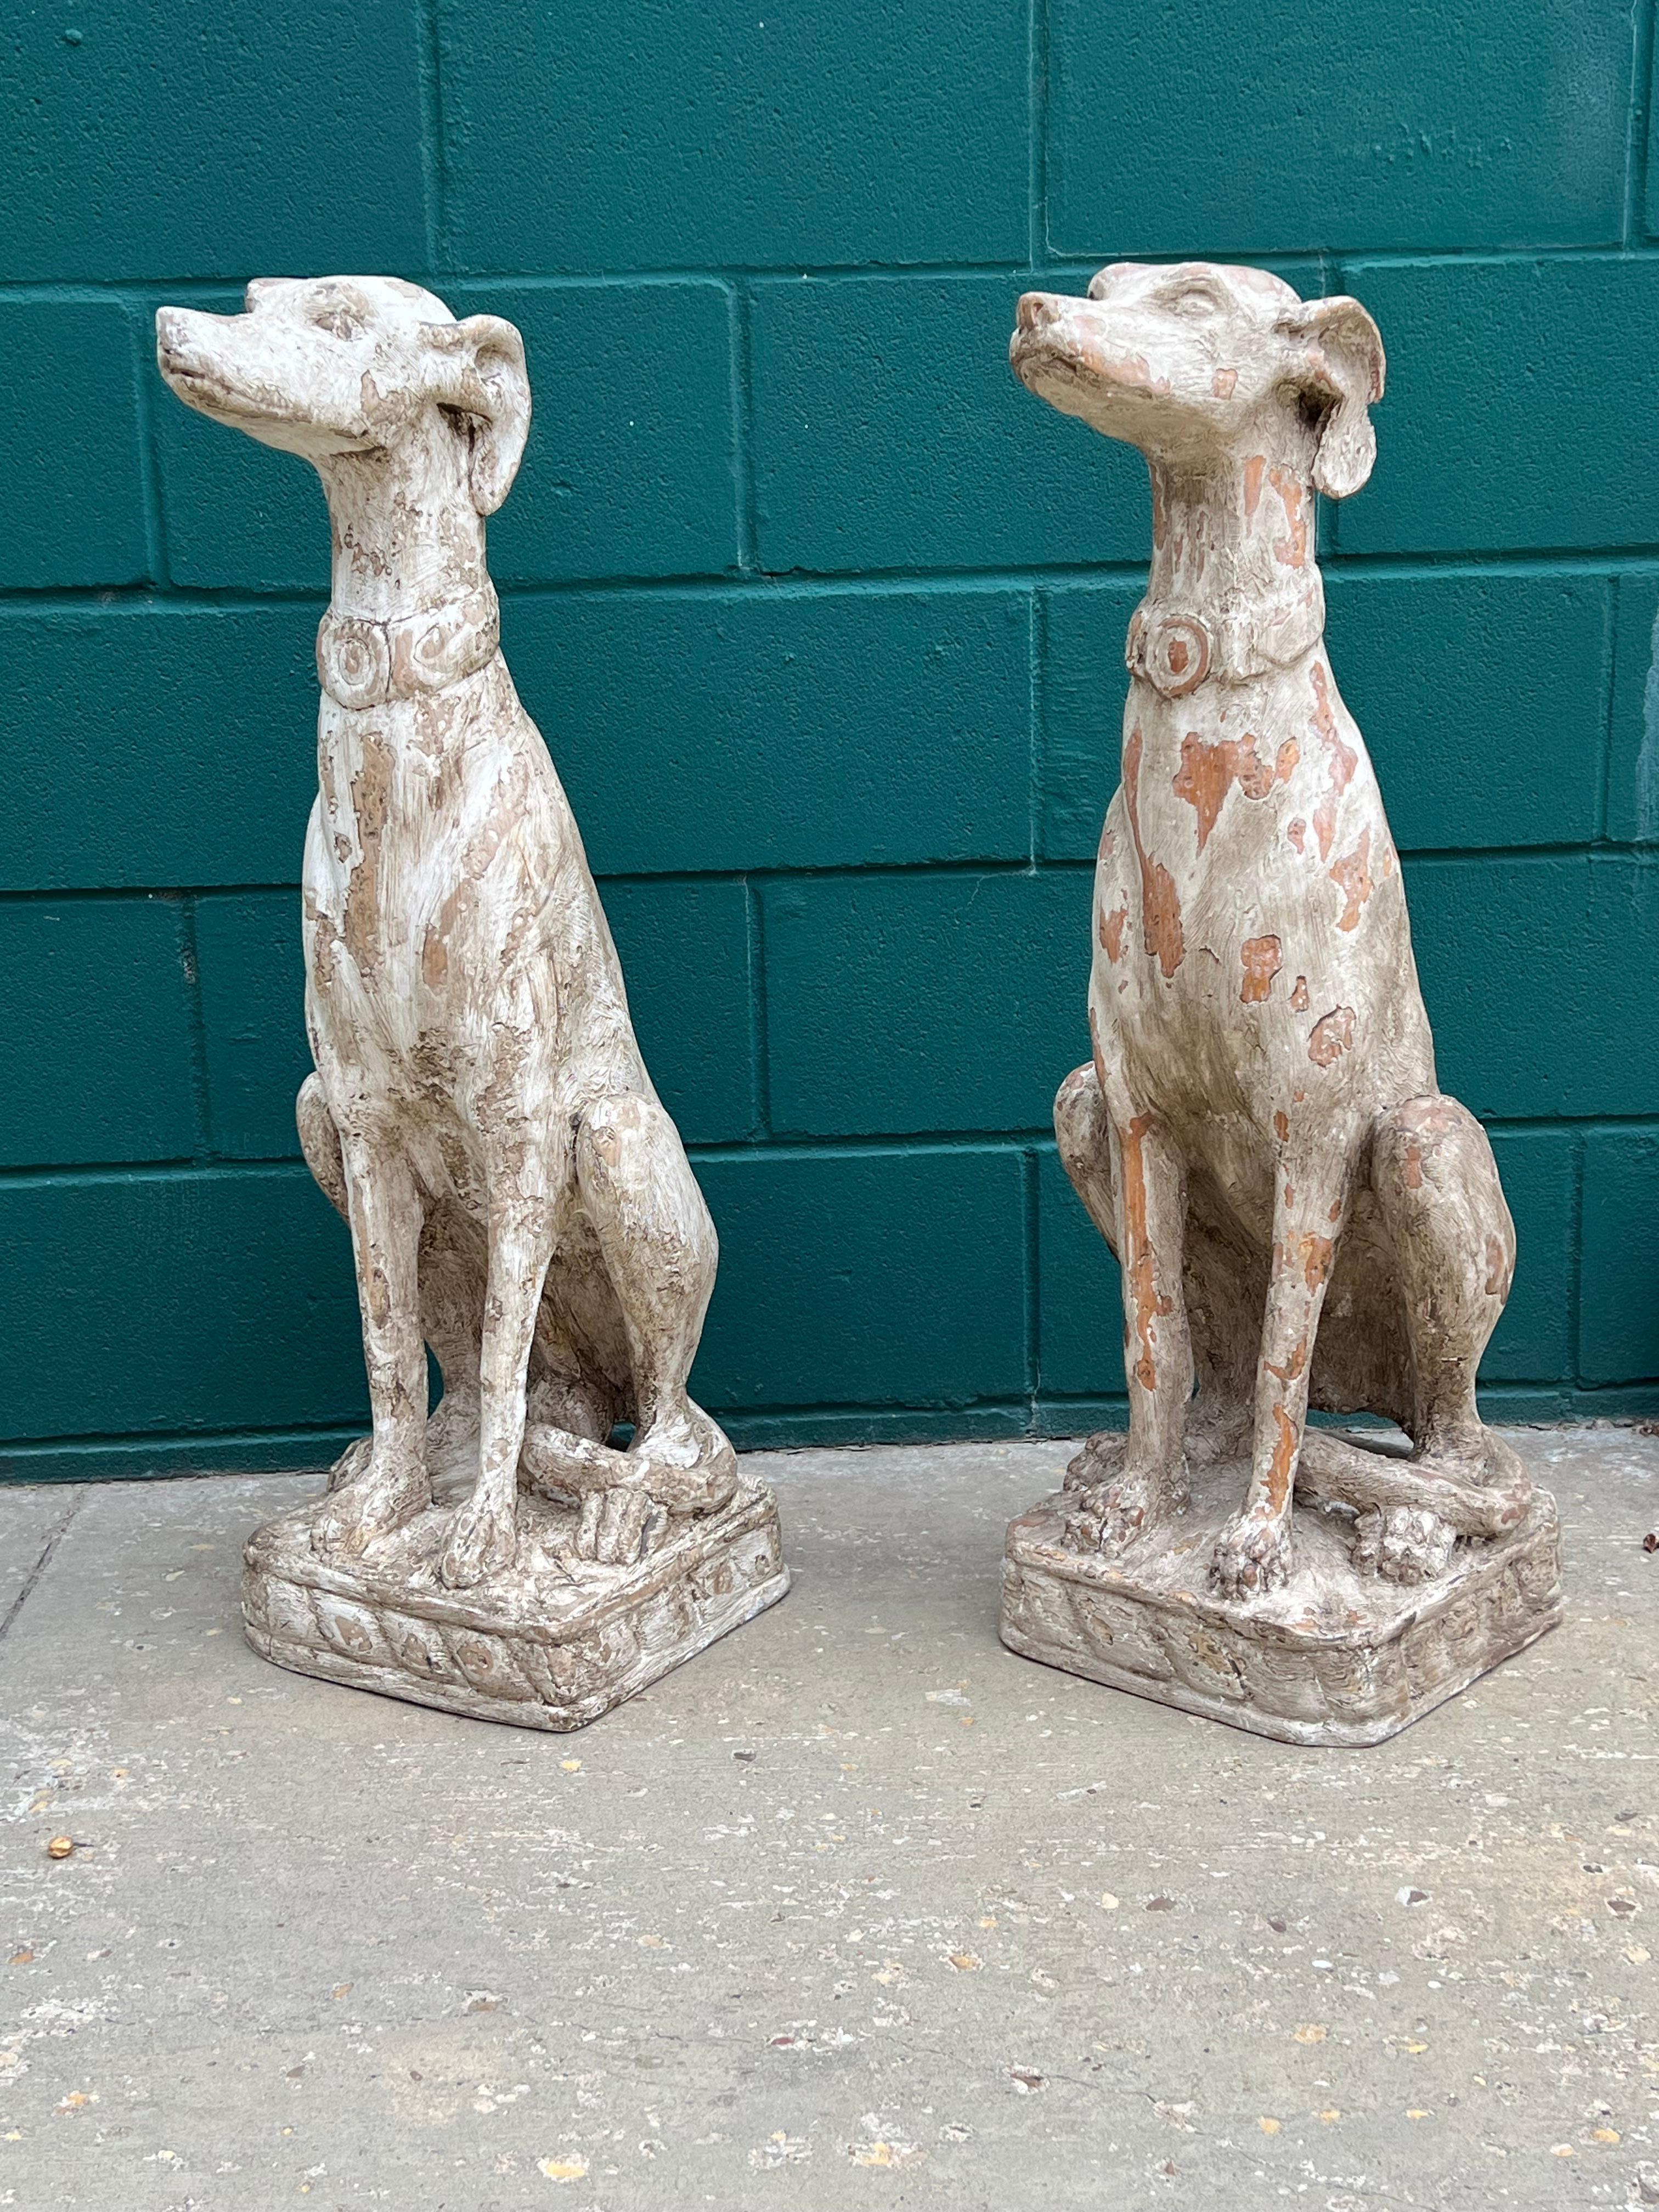 Cette paire de lévriers en bois sculptés à la main mesure plus de 30 cm de haut,  a été fabriqué en Italie.  Ils sont représentés assis sur leurs hanches, avec leur longue et fine queue caractéristique enroulée autour d'une patte arrière.  Leurs